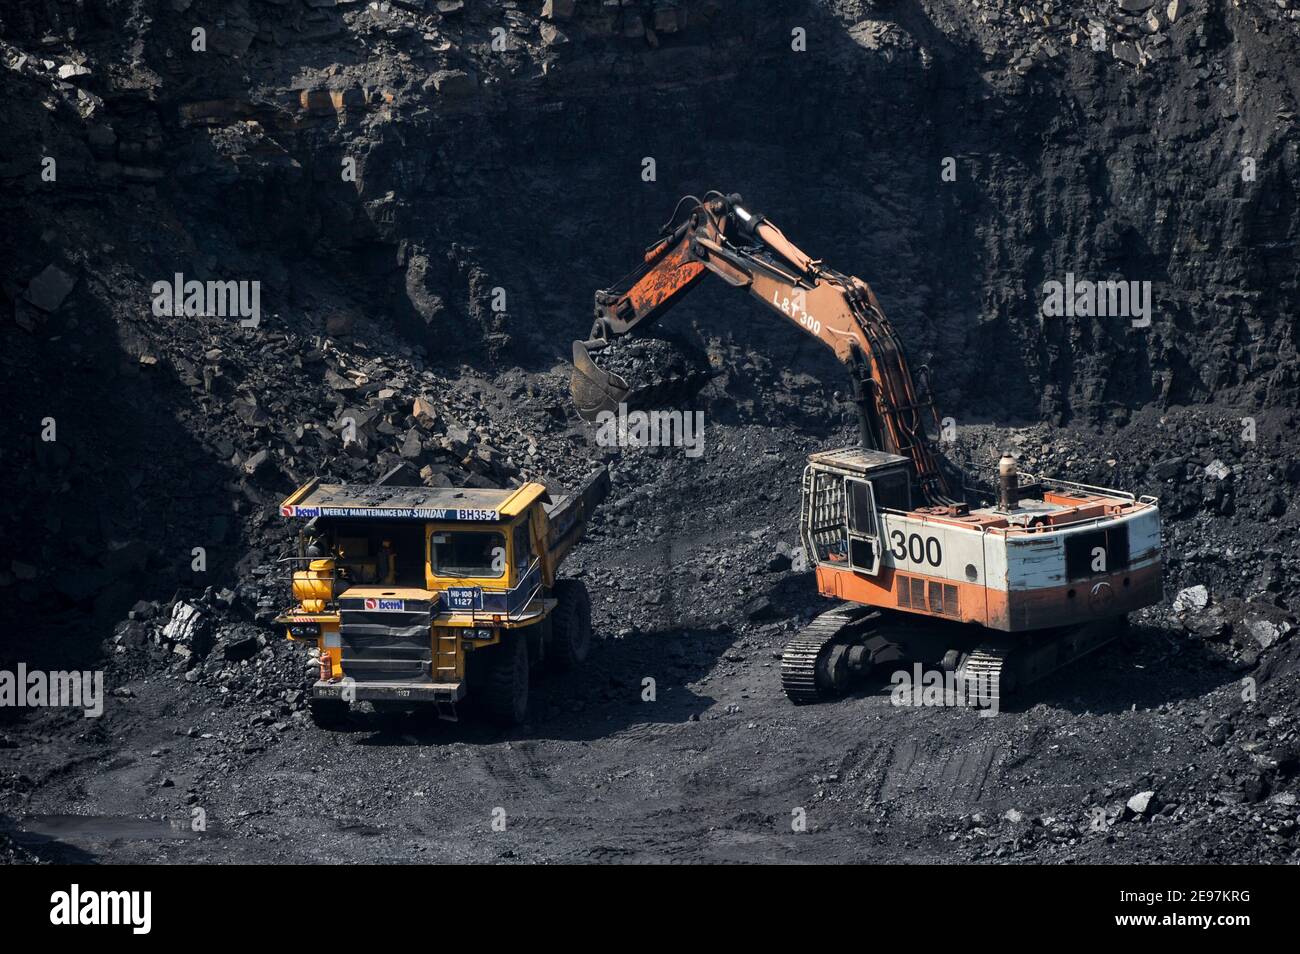 INDE Dhanbad, mine de charbon à ciel ouvert de BCCL Ltd une entreprise de CHARBON INDE , L&T Digger et grand rembeur de BEML / INDIEN Dhanbad , offenser Kohle Tagebau von BCCL Ltd. Ein Tochterunternehmen von Coal India Banque D'Images